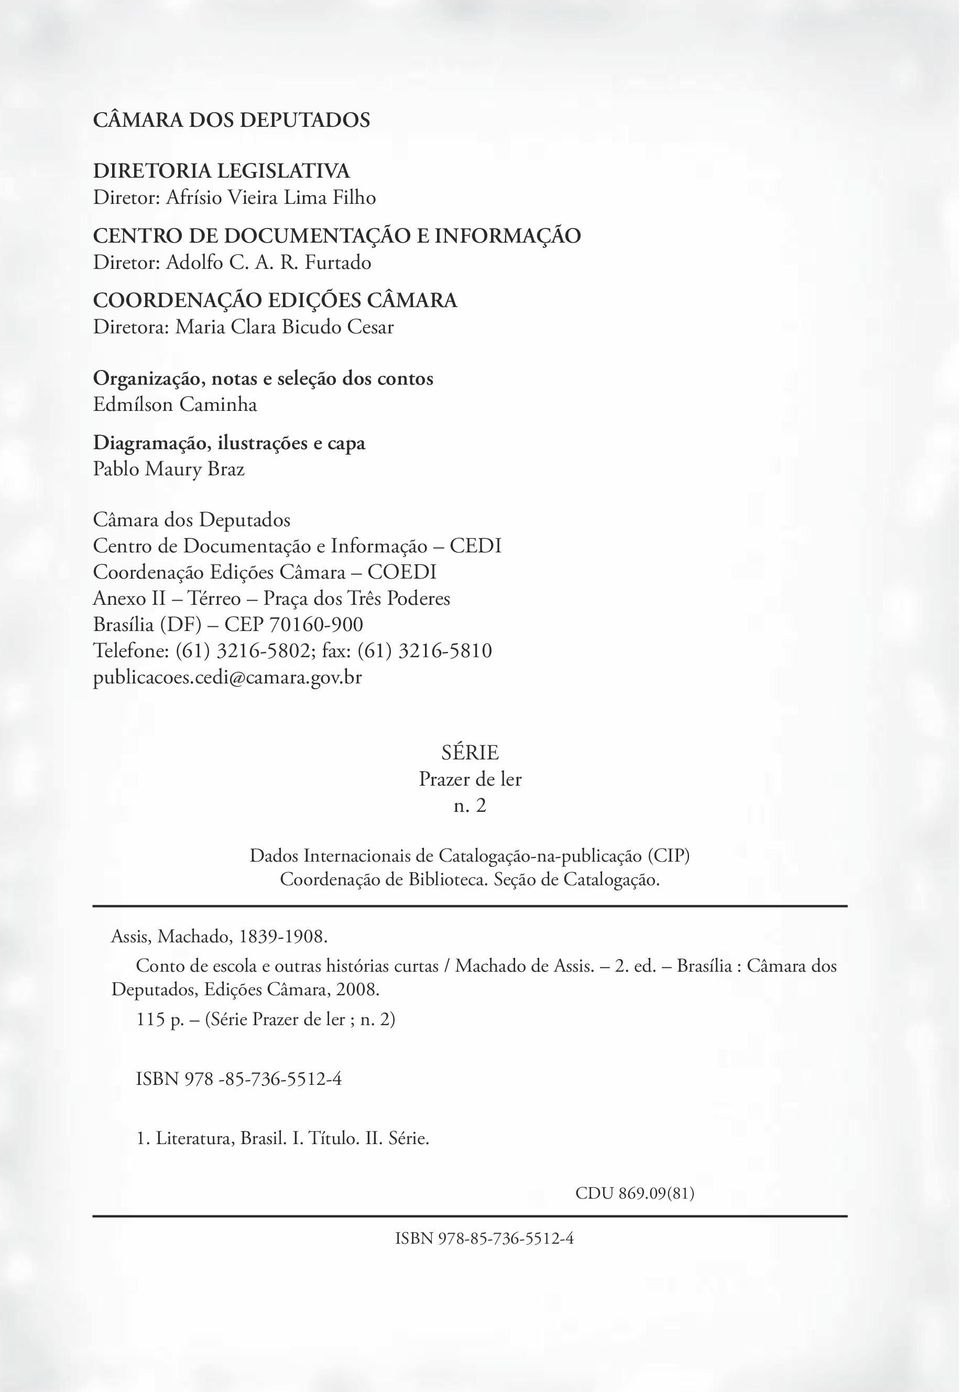 Centro de Documentação e Informação CEDI Coordenação Edições Câmara COEDI Anexo II Térreo Praça dos Três Poderes Brasília (DF) CEP 70160-900 Telefone: (61) 3216-5802; fax: (61) 3216-5810 publicacoes.